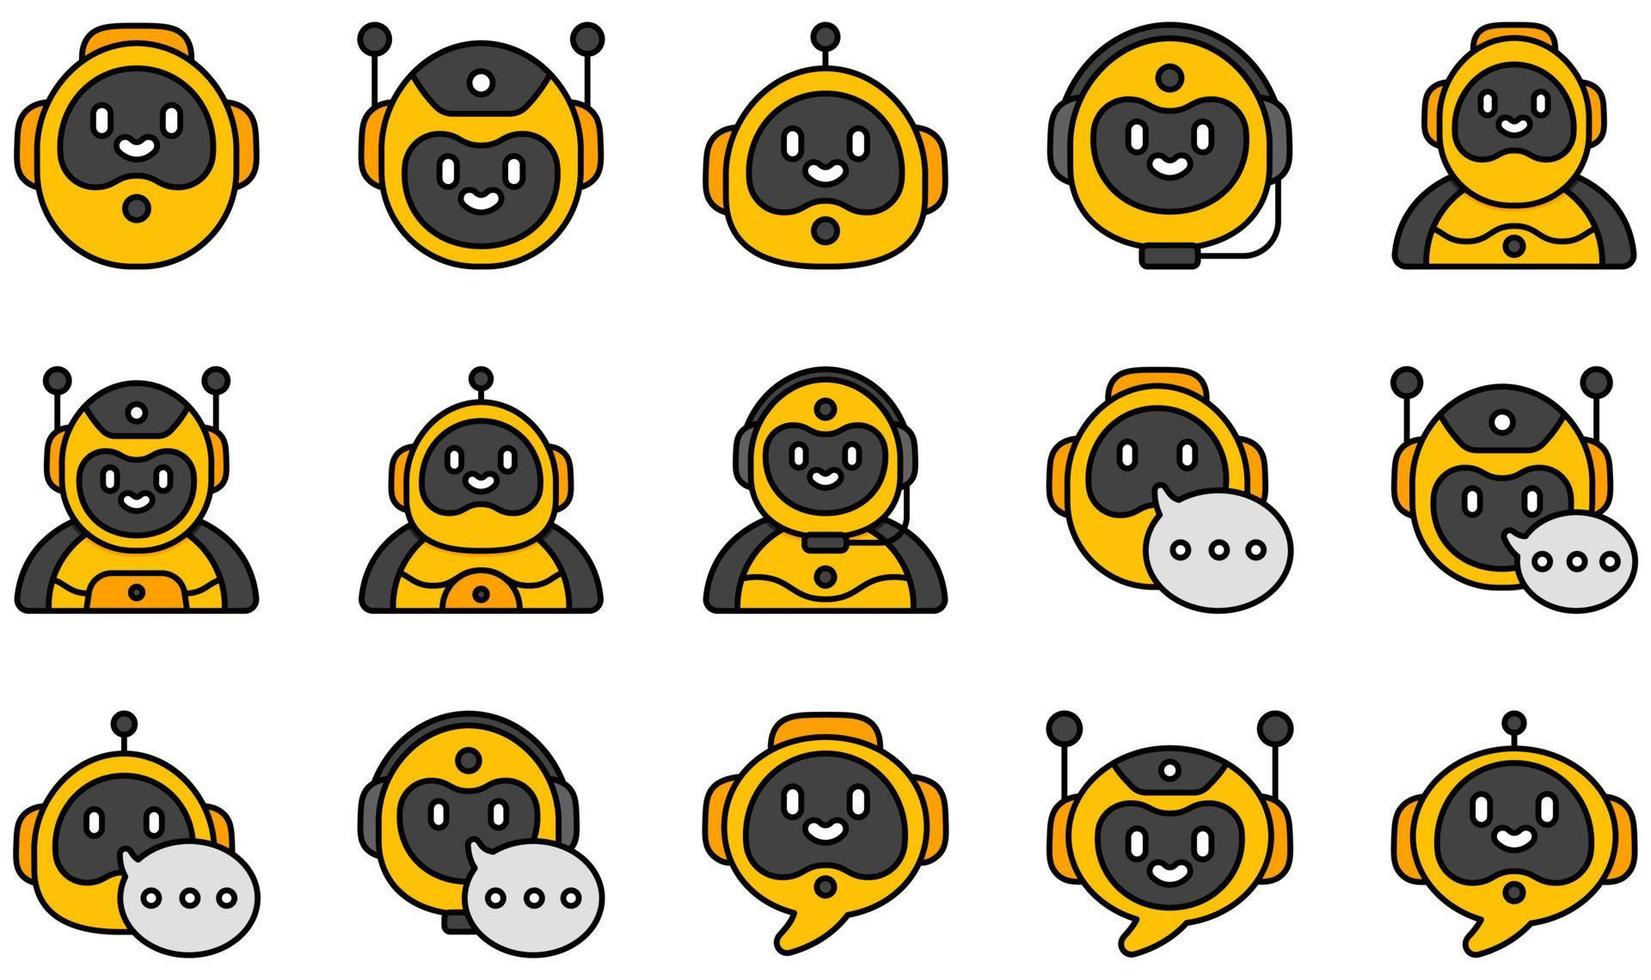 Satz von Vektorsymbolen im Zusammenhang mit Chatbot. enthält Symbole wie Bot, Roboter, Chatbot, Chat, Nachricht, Konversation und mehr. vektor